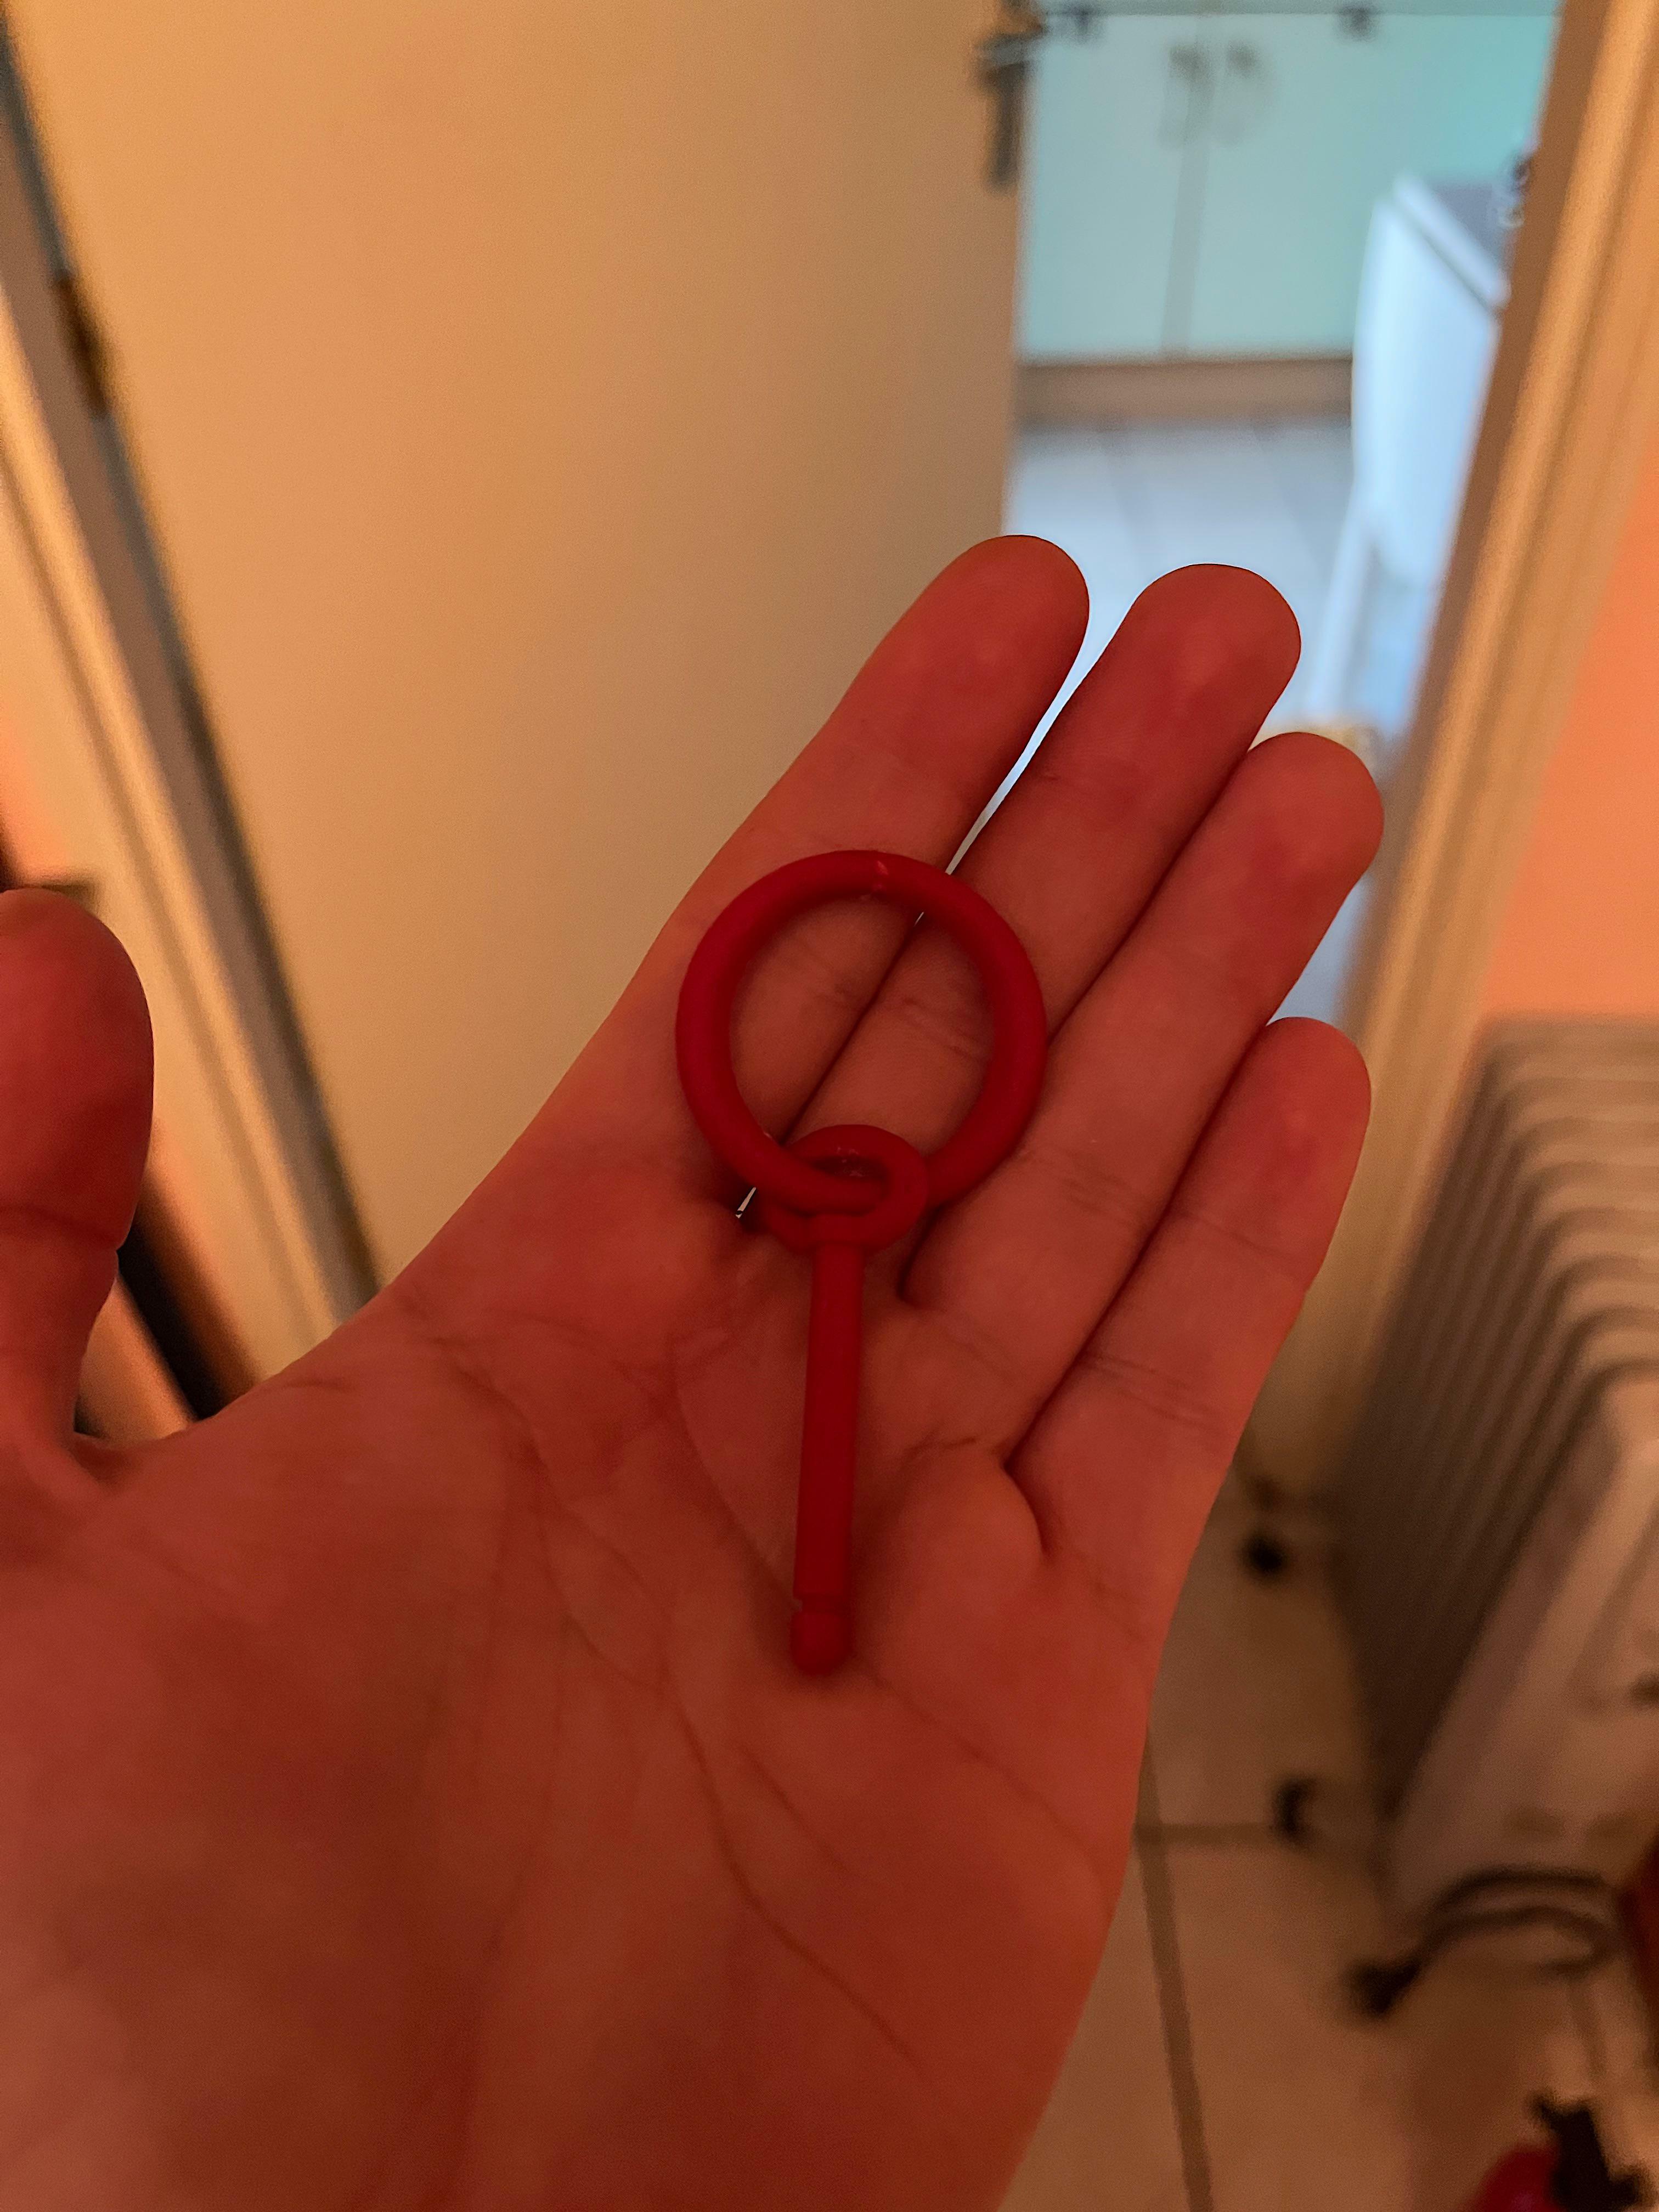 Clé rouge en plastique bizarre que j'ai trouvée dans mon appartement après le départ des pompiers à la suite d'un incendie.